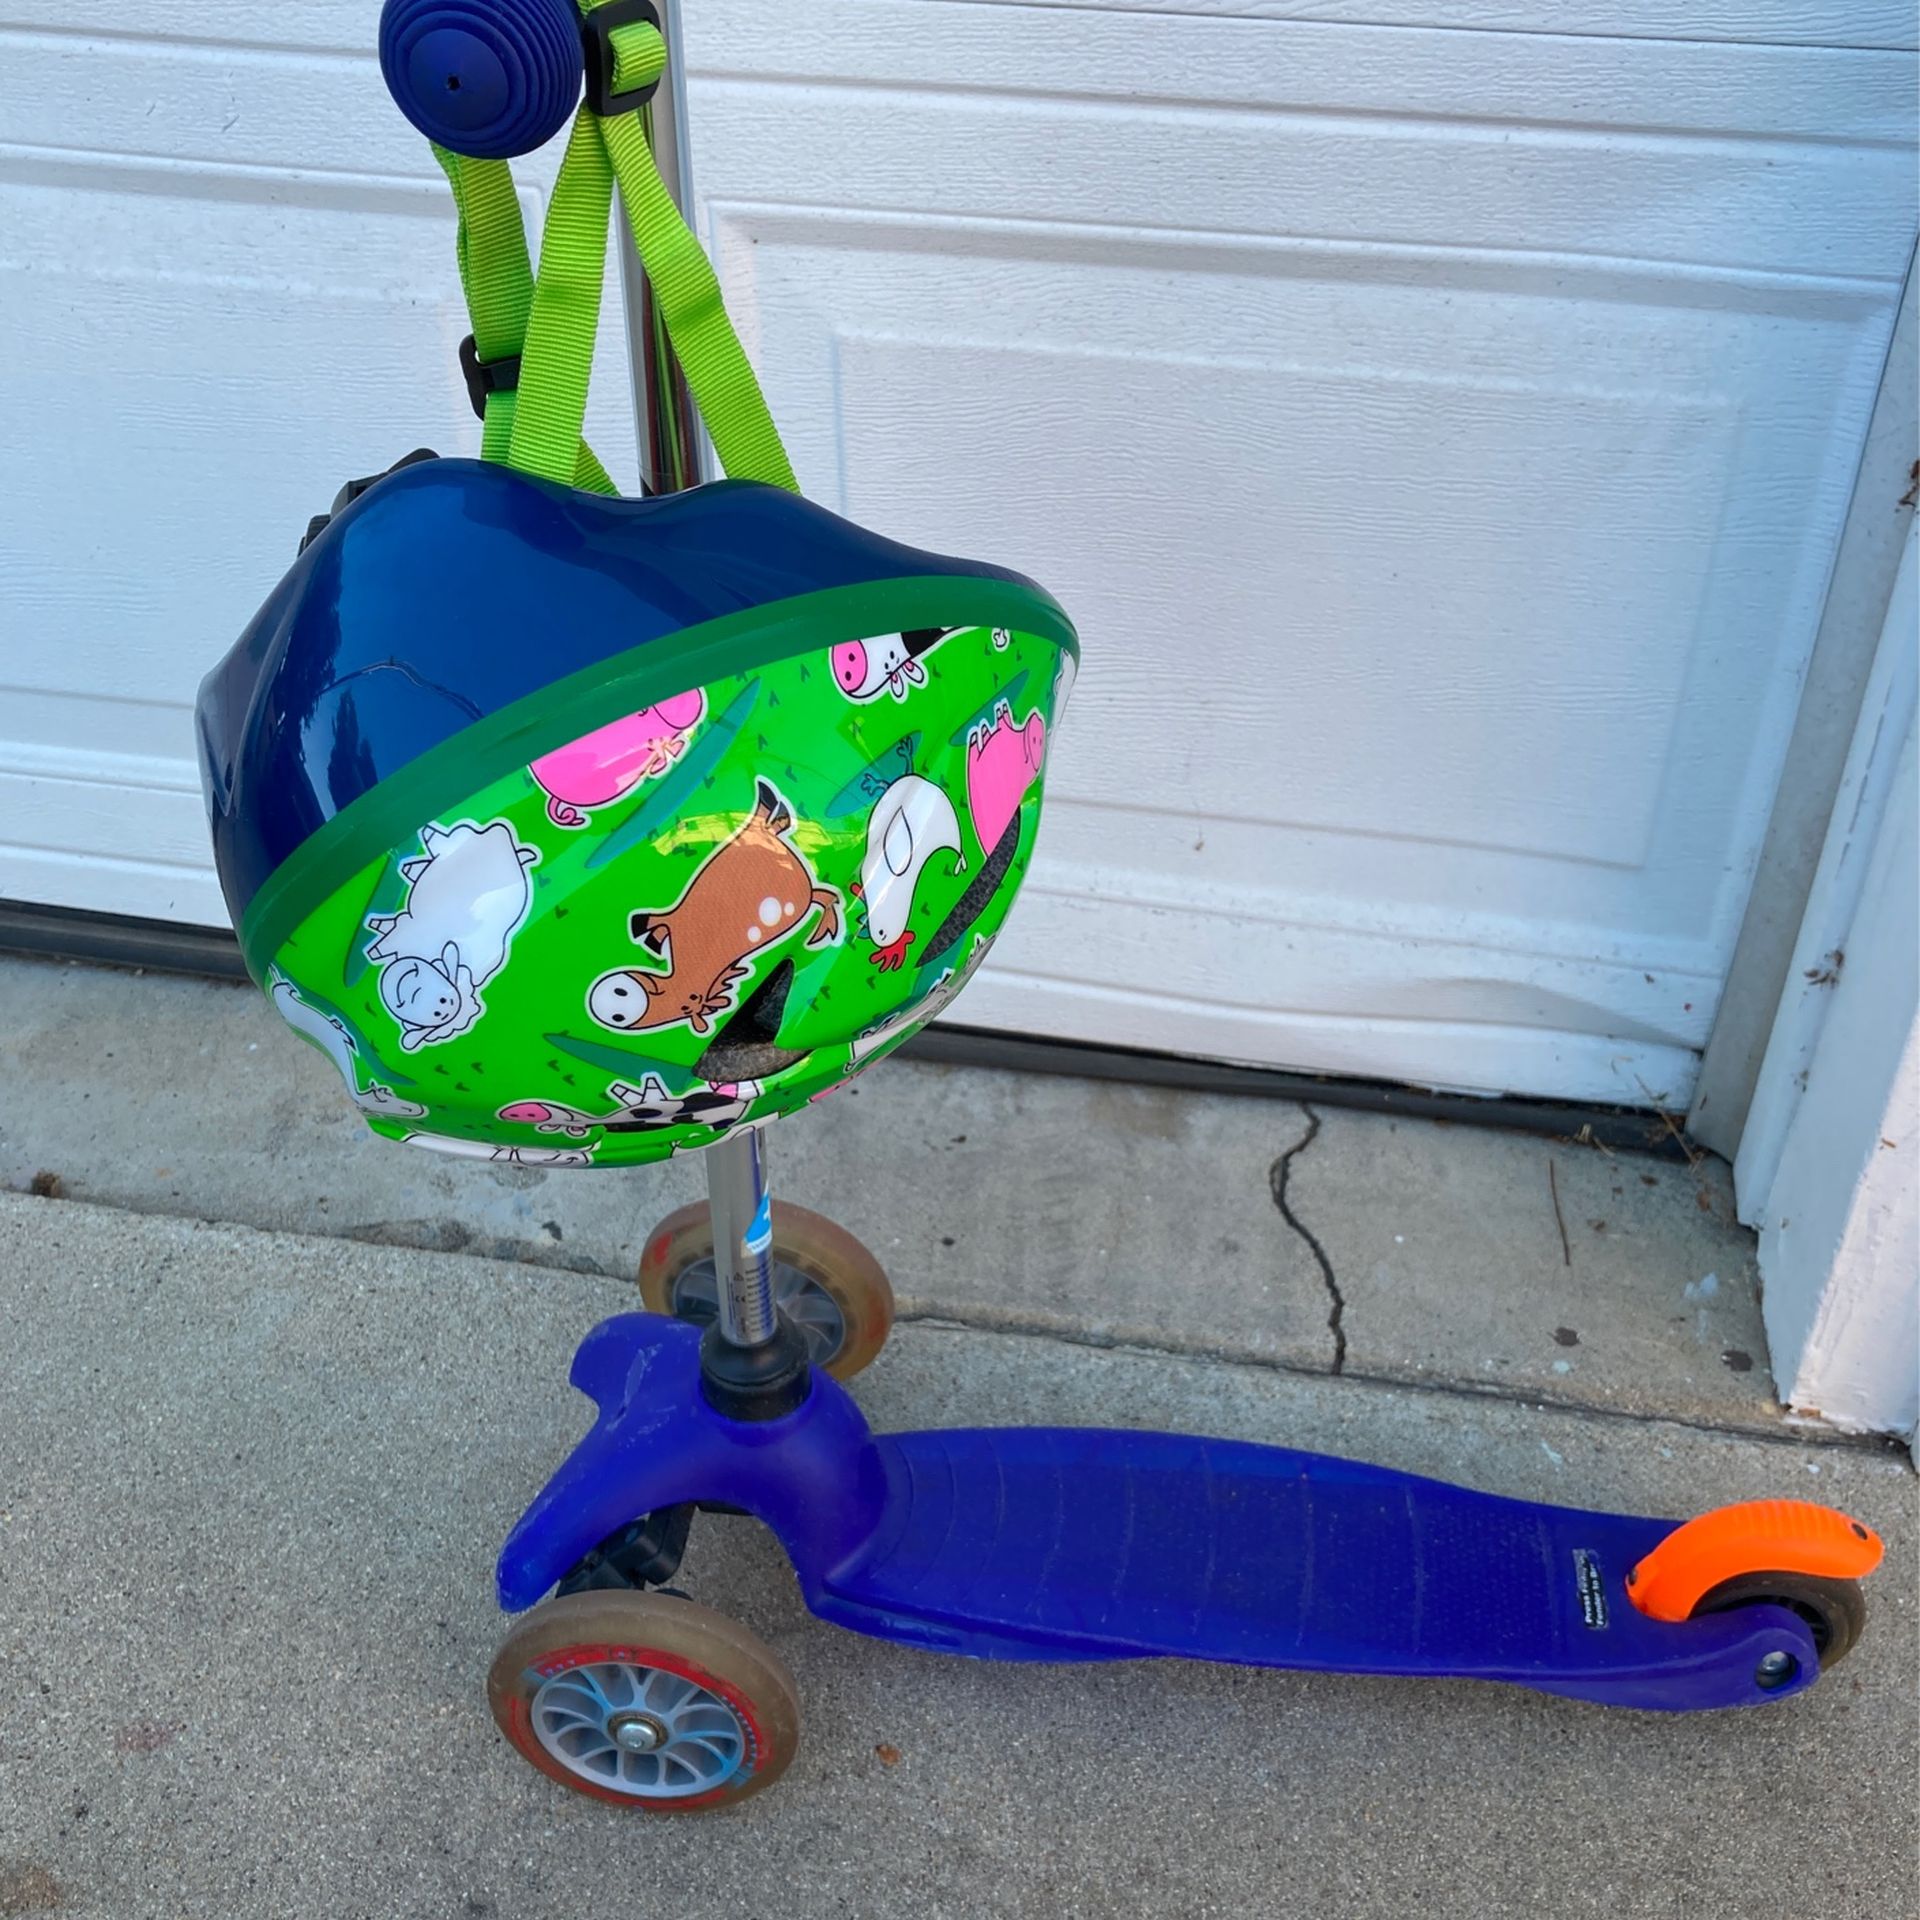 Original 3 Wheel Lean-to-steer Micro Kickboard With Helmet $60